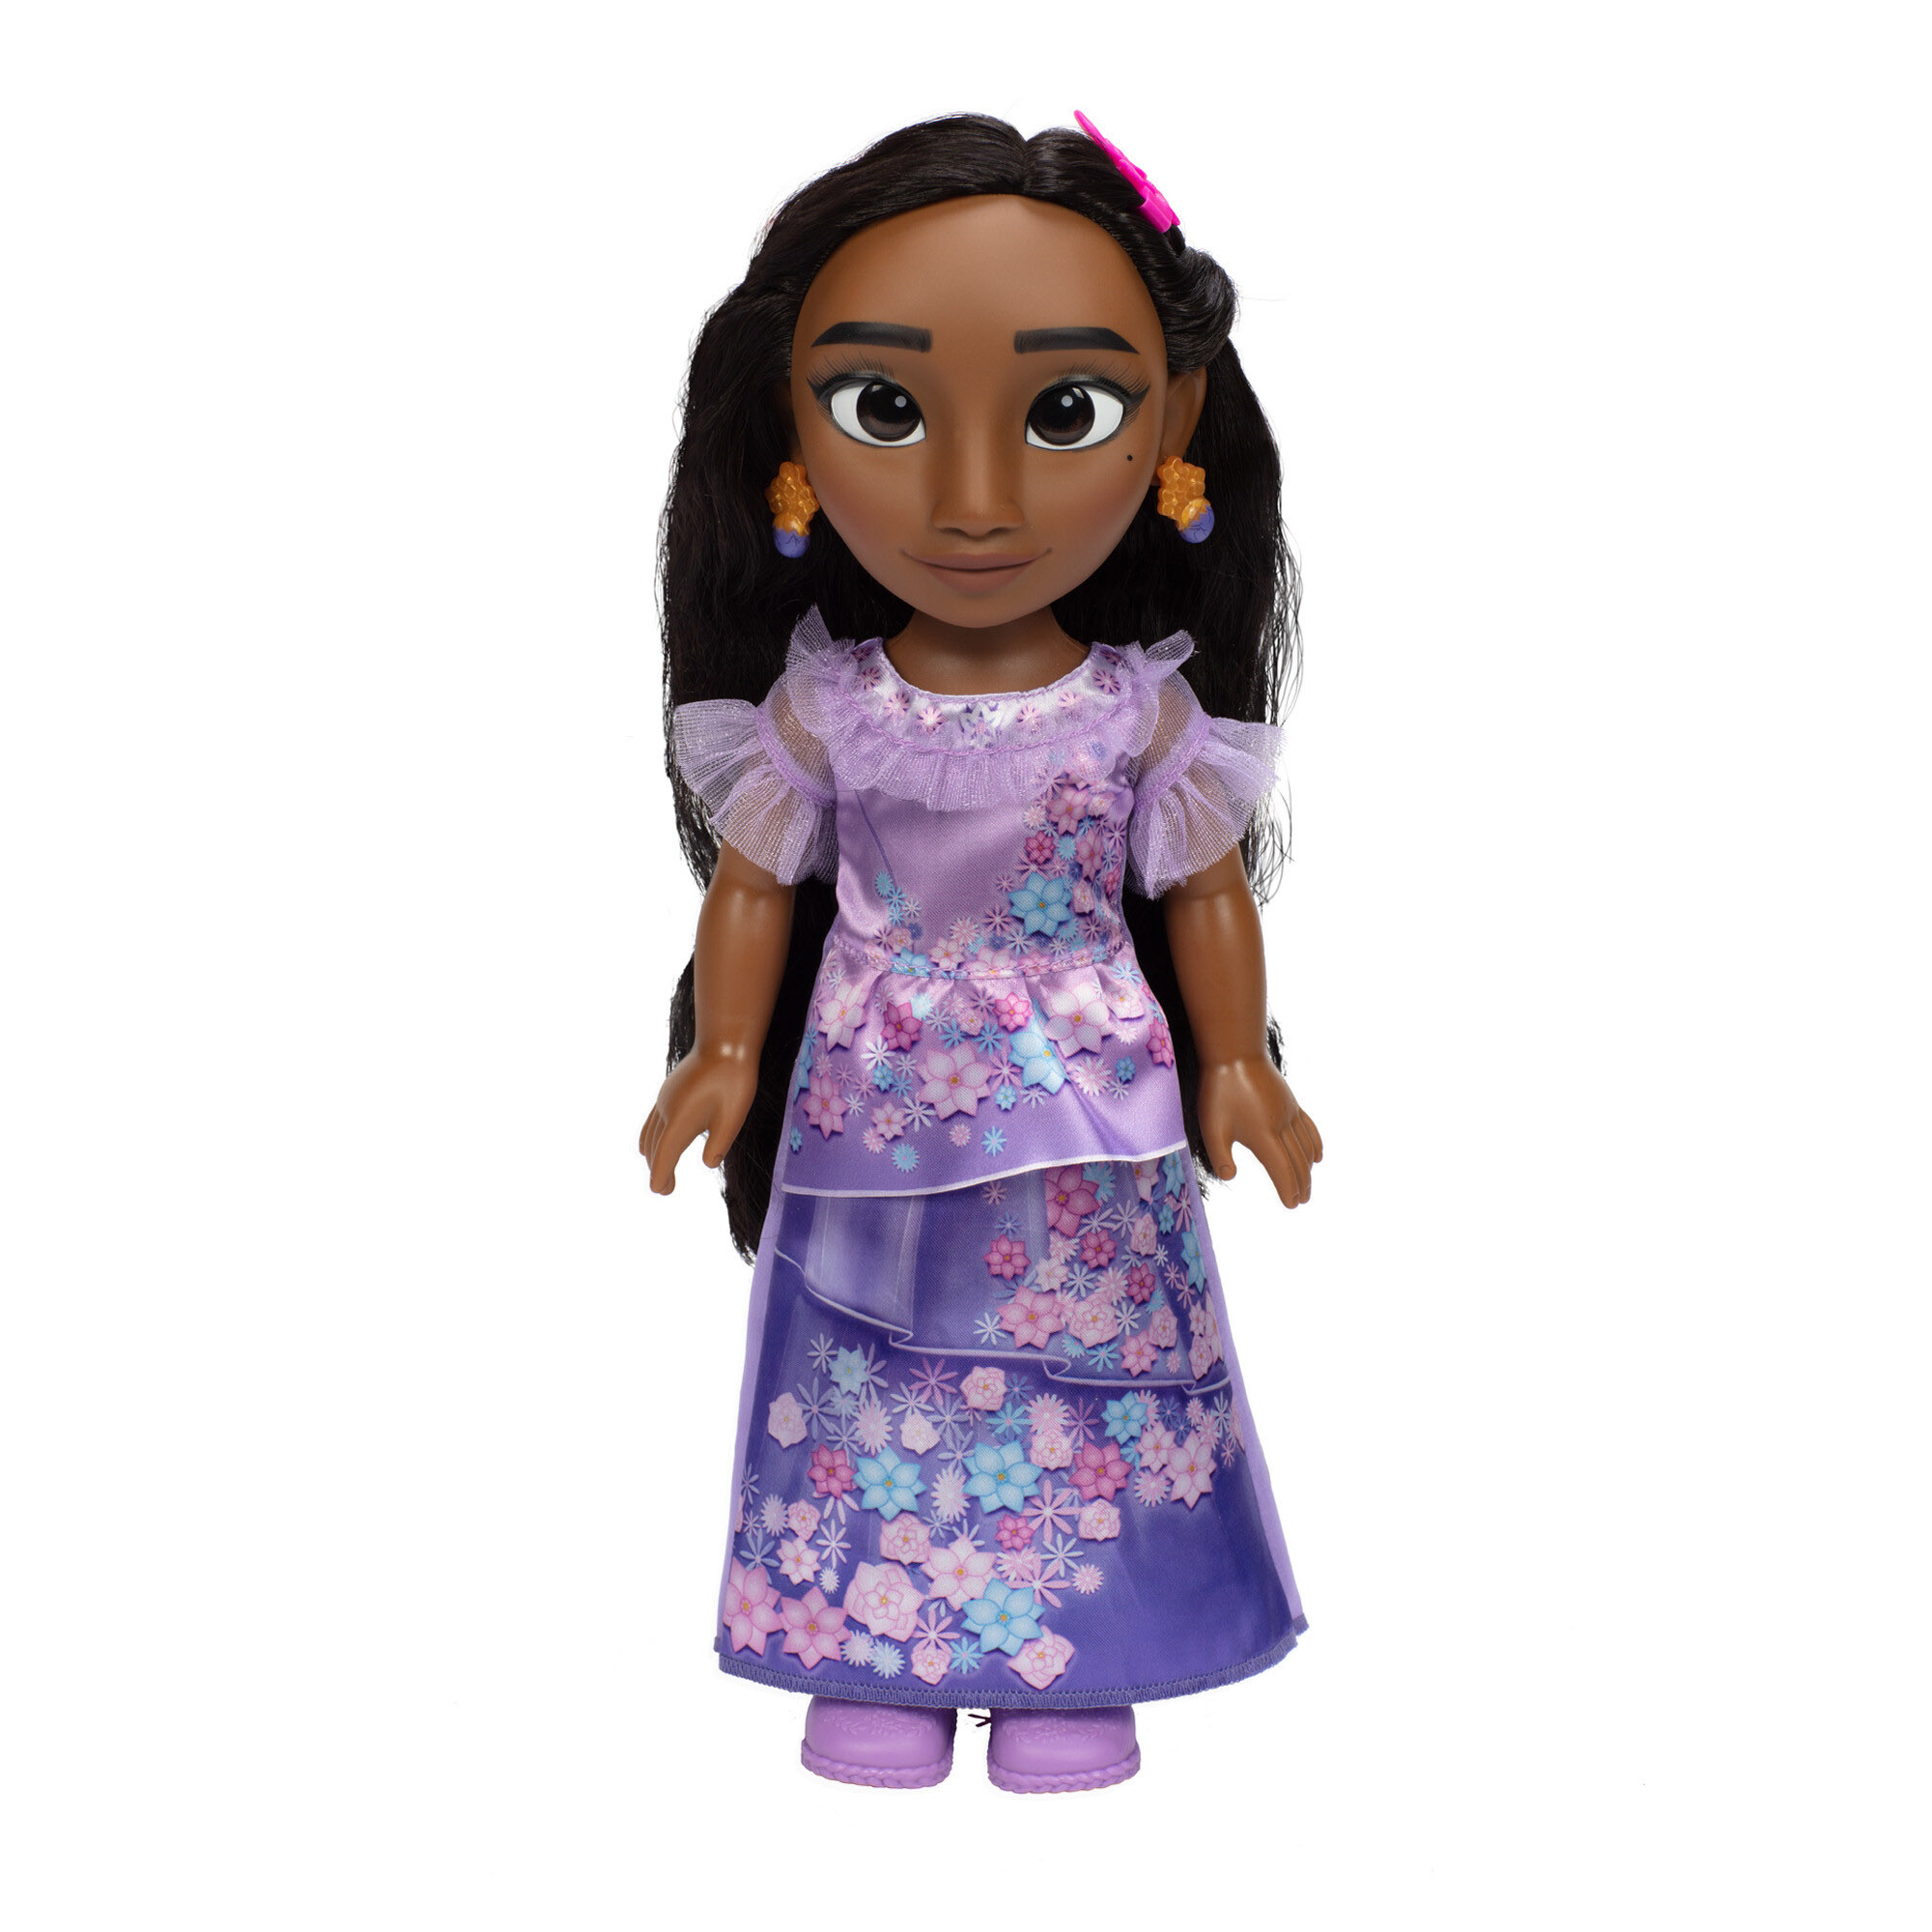 Bambola Isabela 38 cm con occhi scintillanti, dal film Encanto - Disney